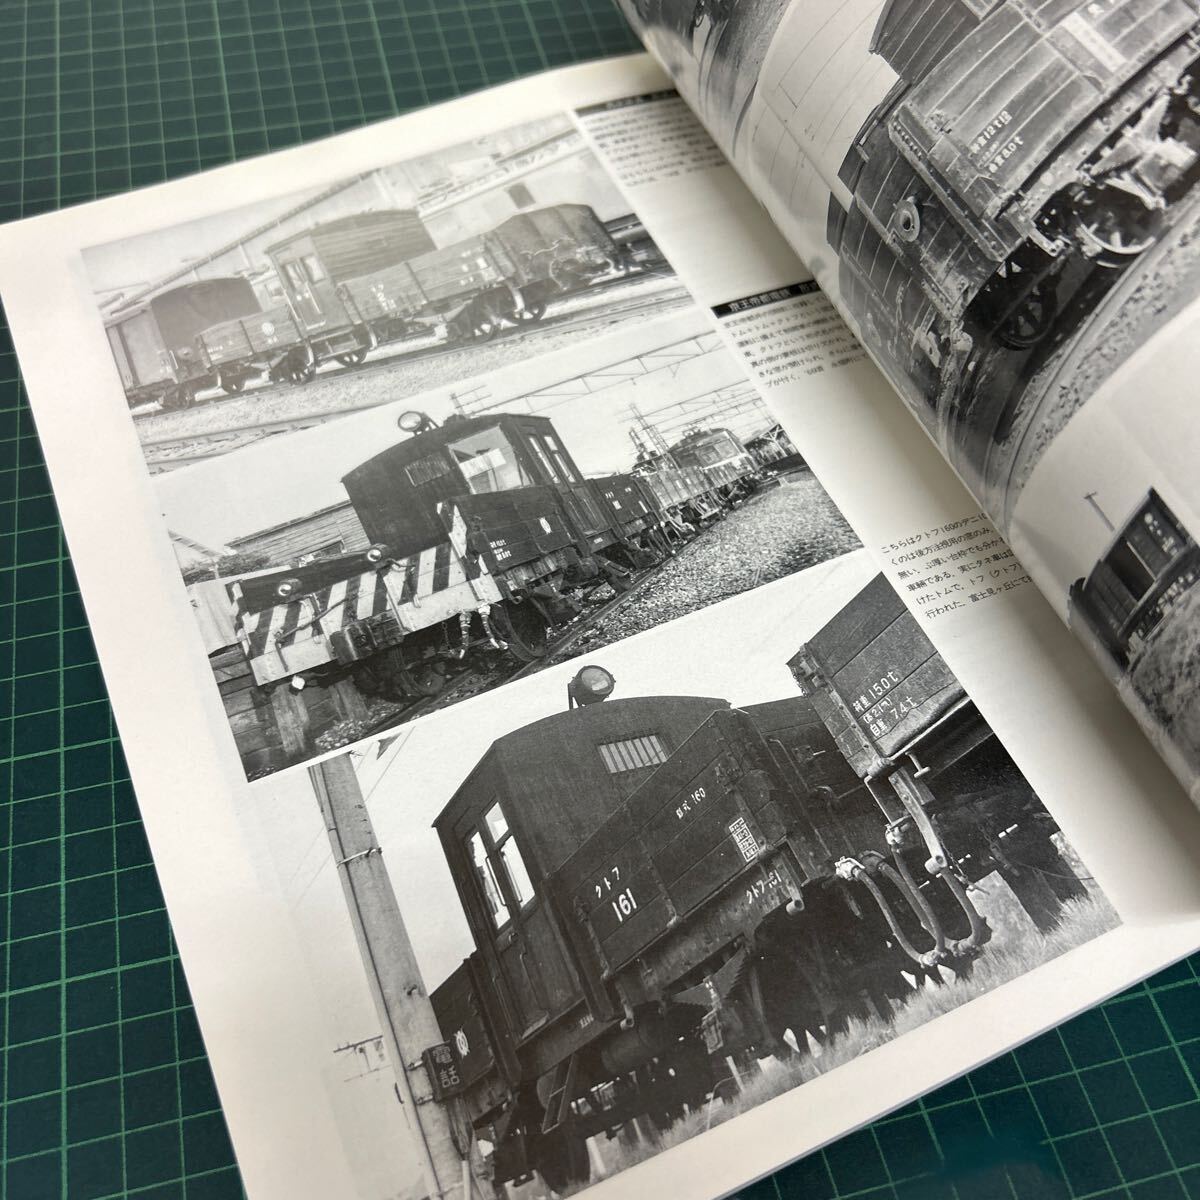 ディテール・ファイル DETAIL FILE 2 図面と写真で綴る車輌のプロフィール 私鉄の車輌たち Rail Magazine 1月号増刊 1997年発行の画像7